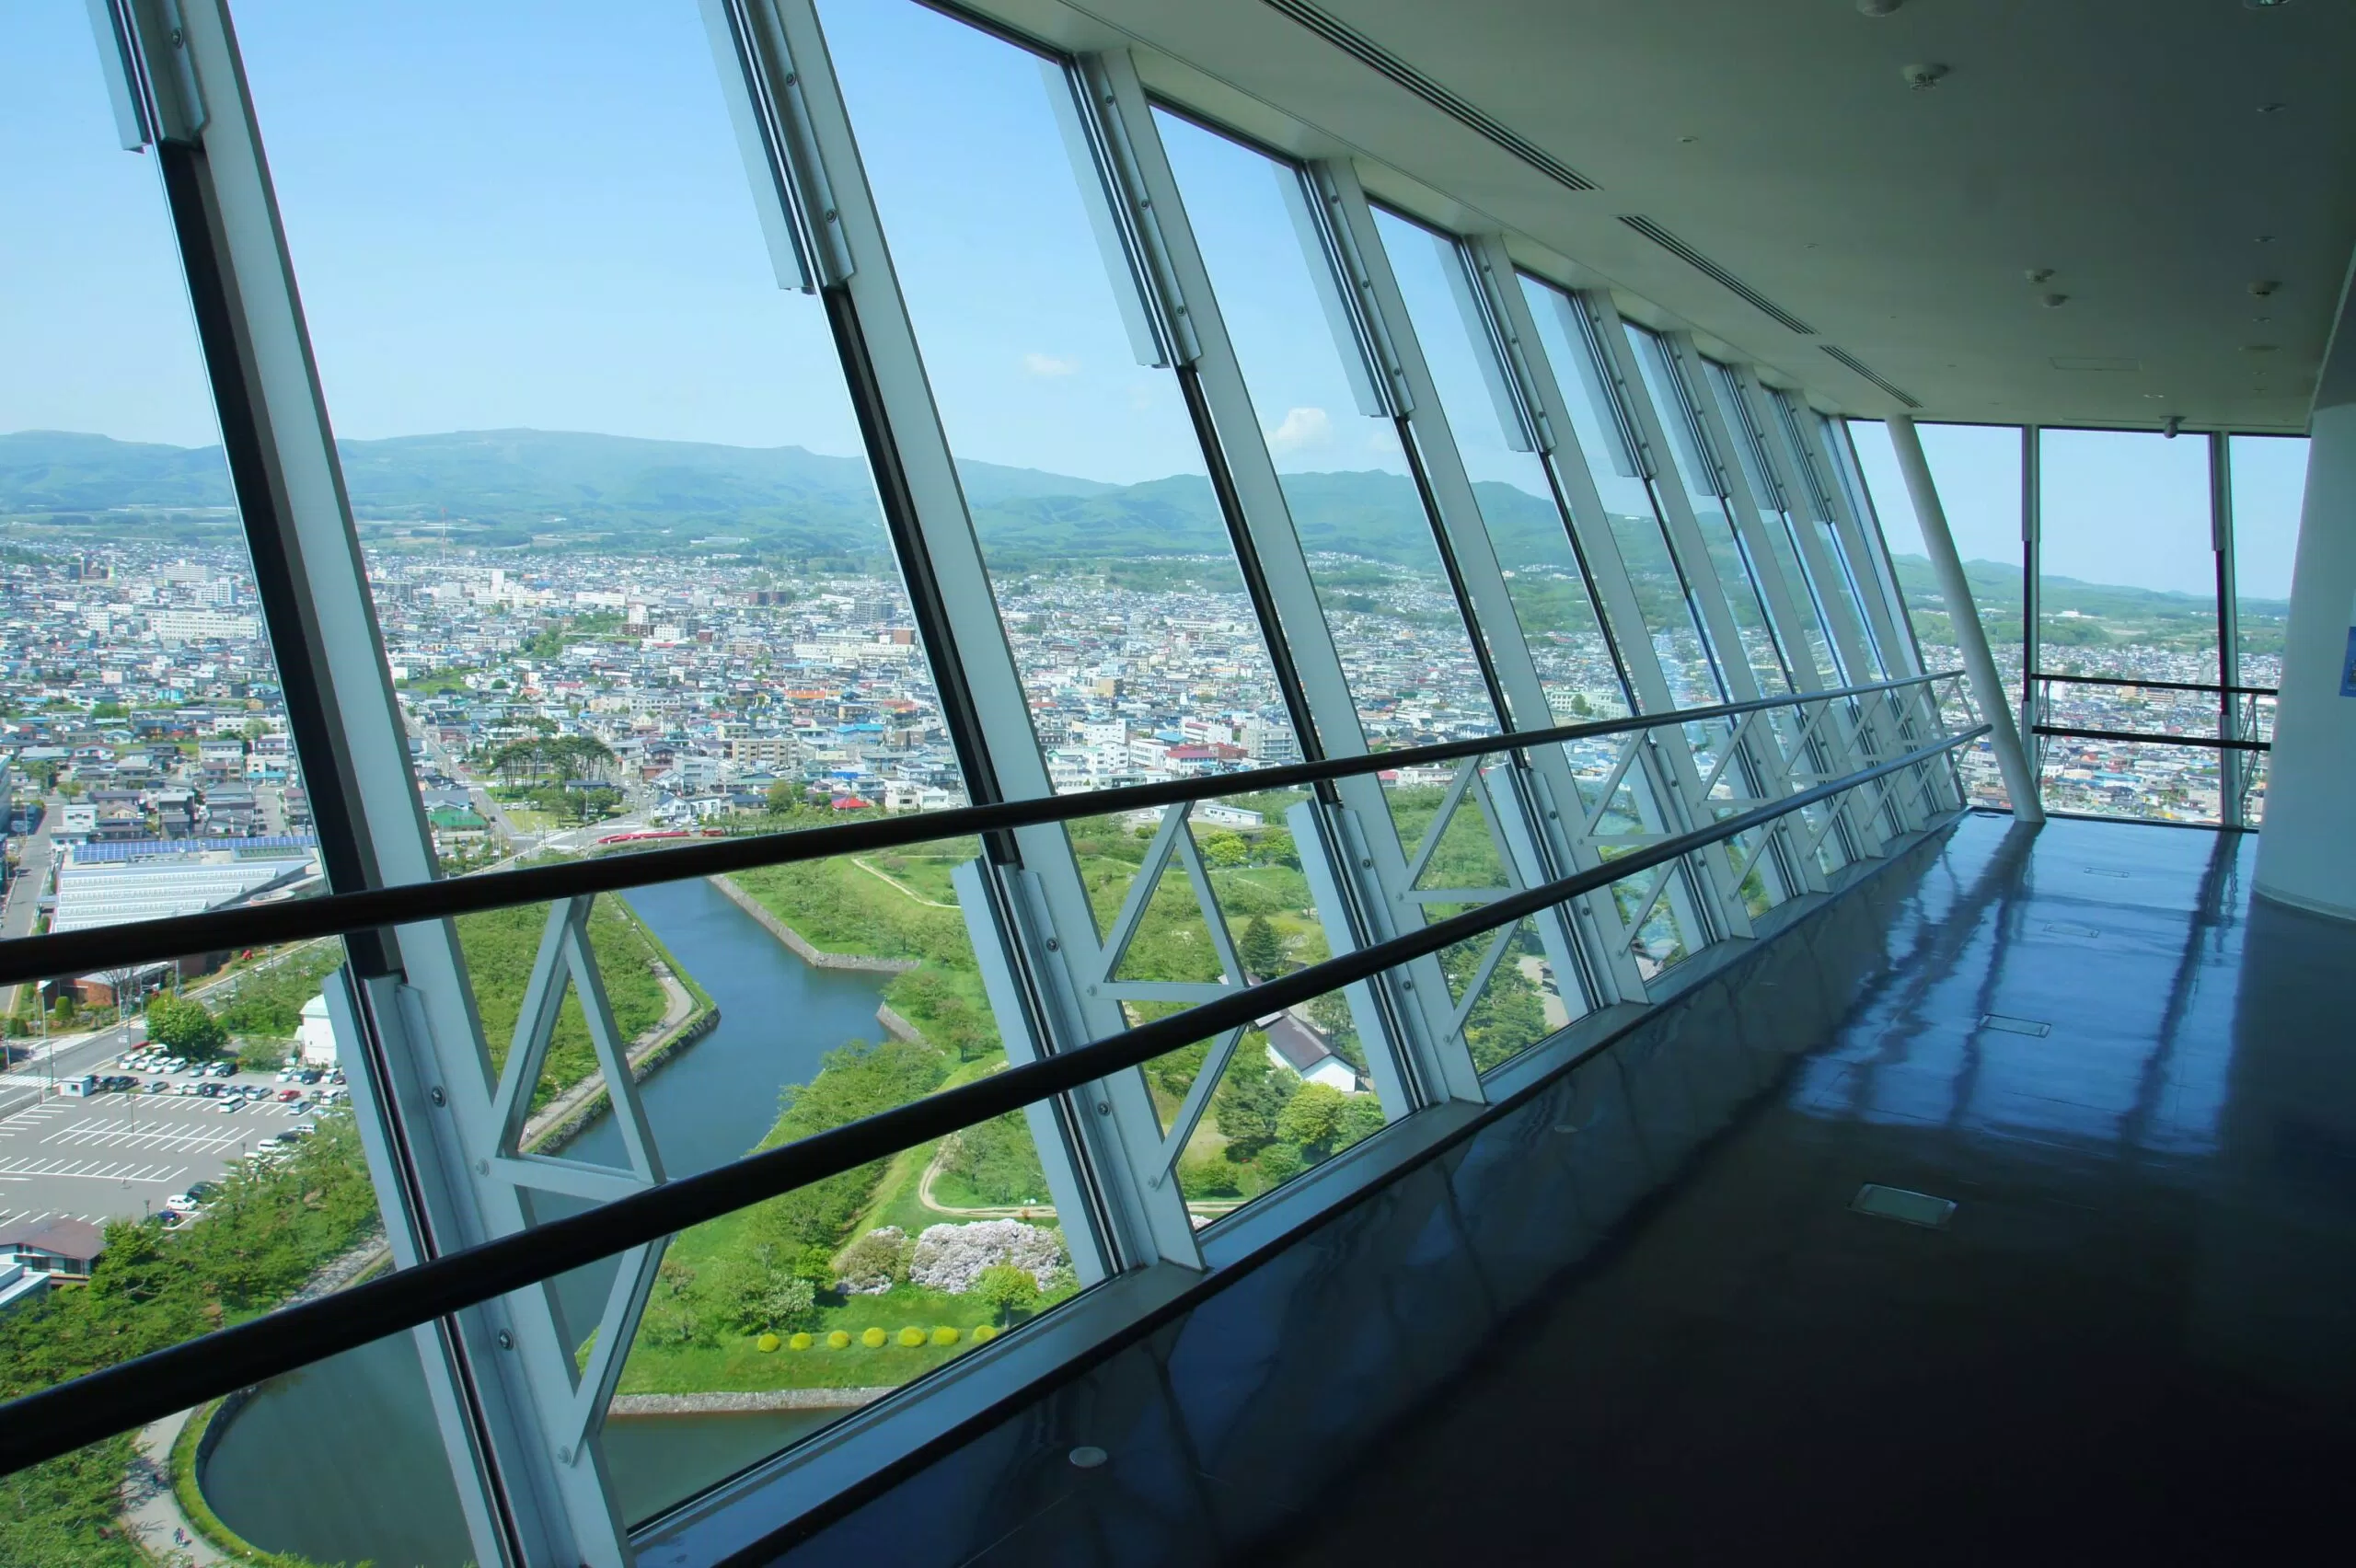 View ngắm nhìn từ bên trong Tháp Goryokaku (ảnh: Internet)